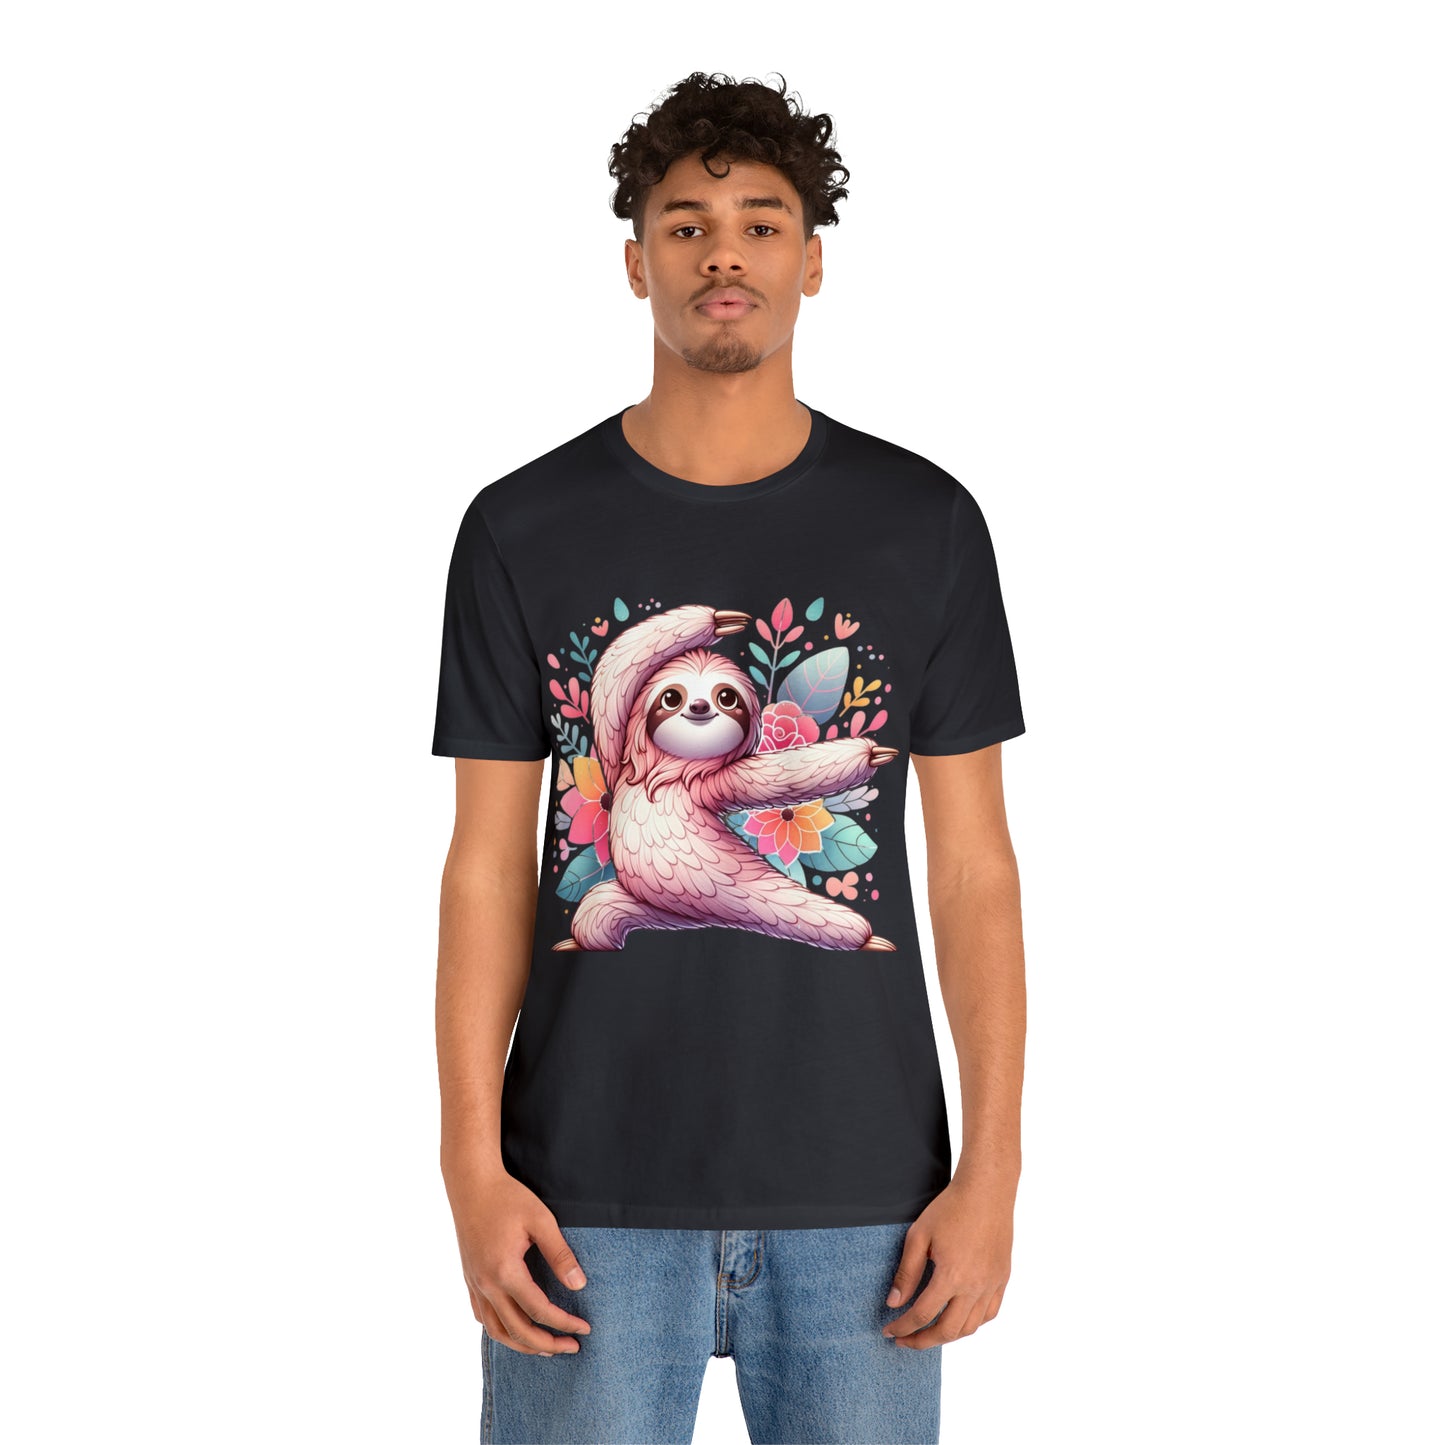 Sloth Yoga T-Shirt, Sloth TShirt, Yoga Shirt, Sloth Lover Gifts,